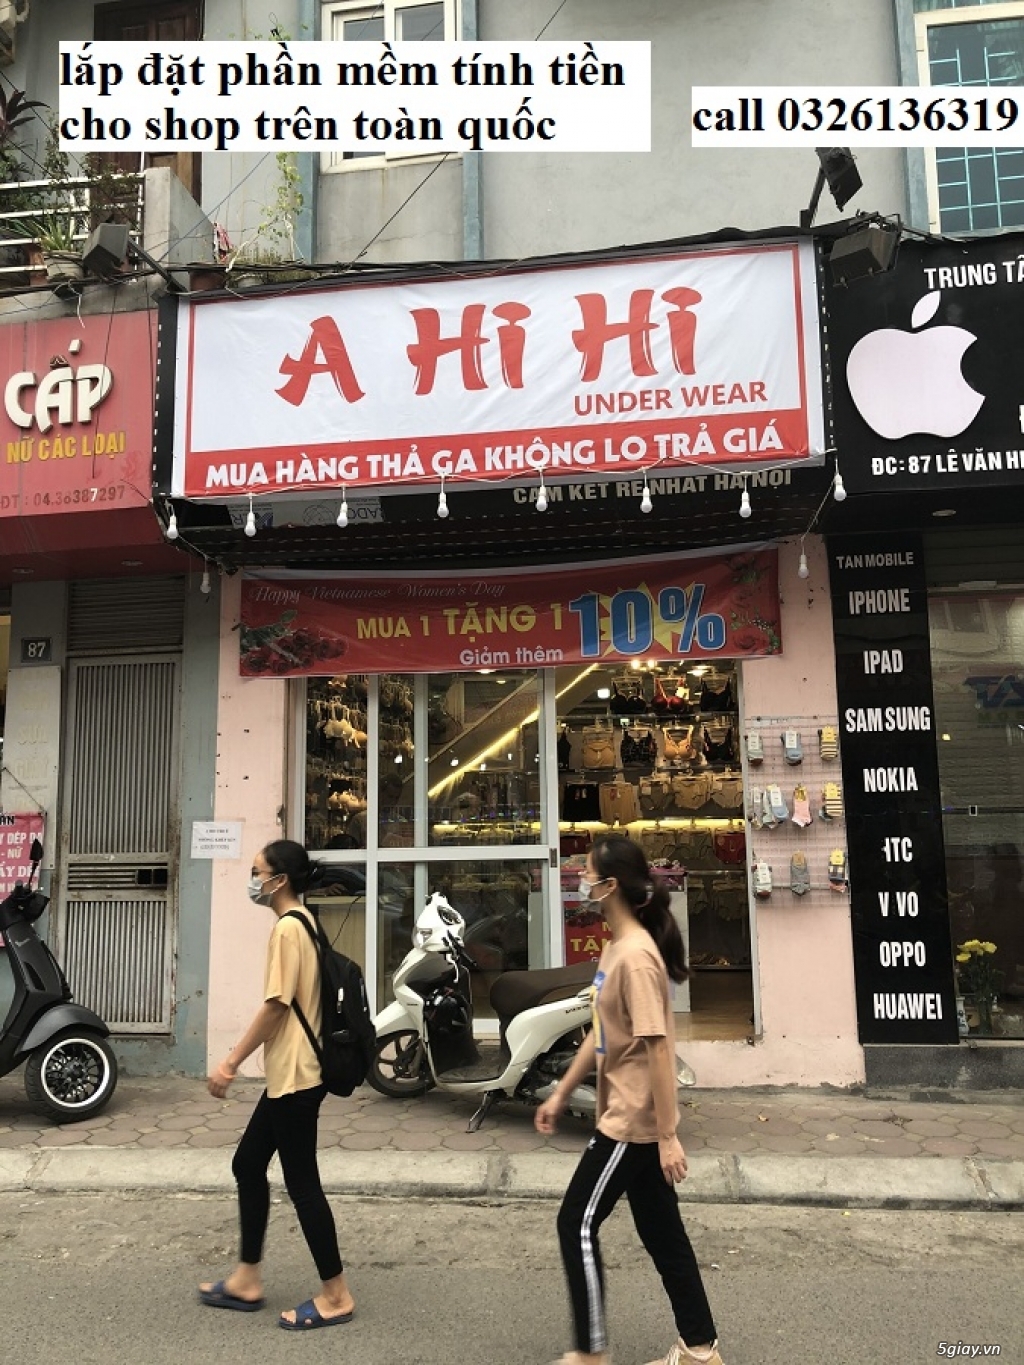 Cài phần mềm tính tiền giá rẻ cho shop thời trang tại Hà Nội - 14